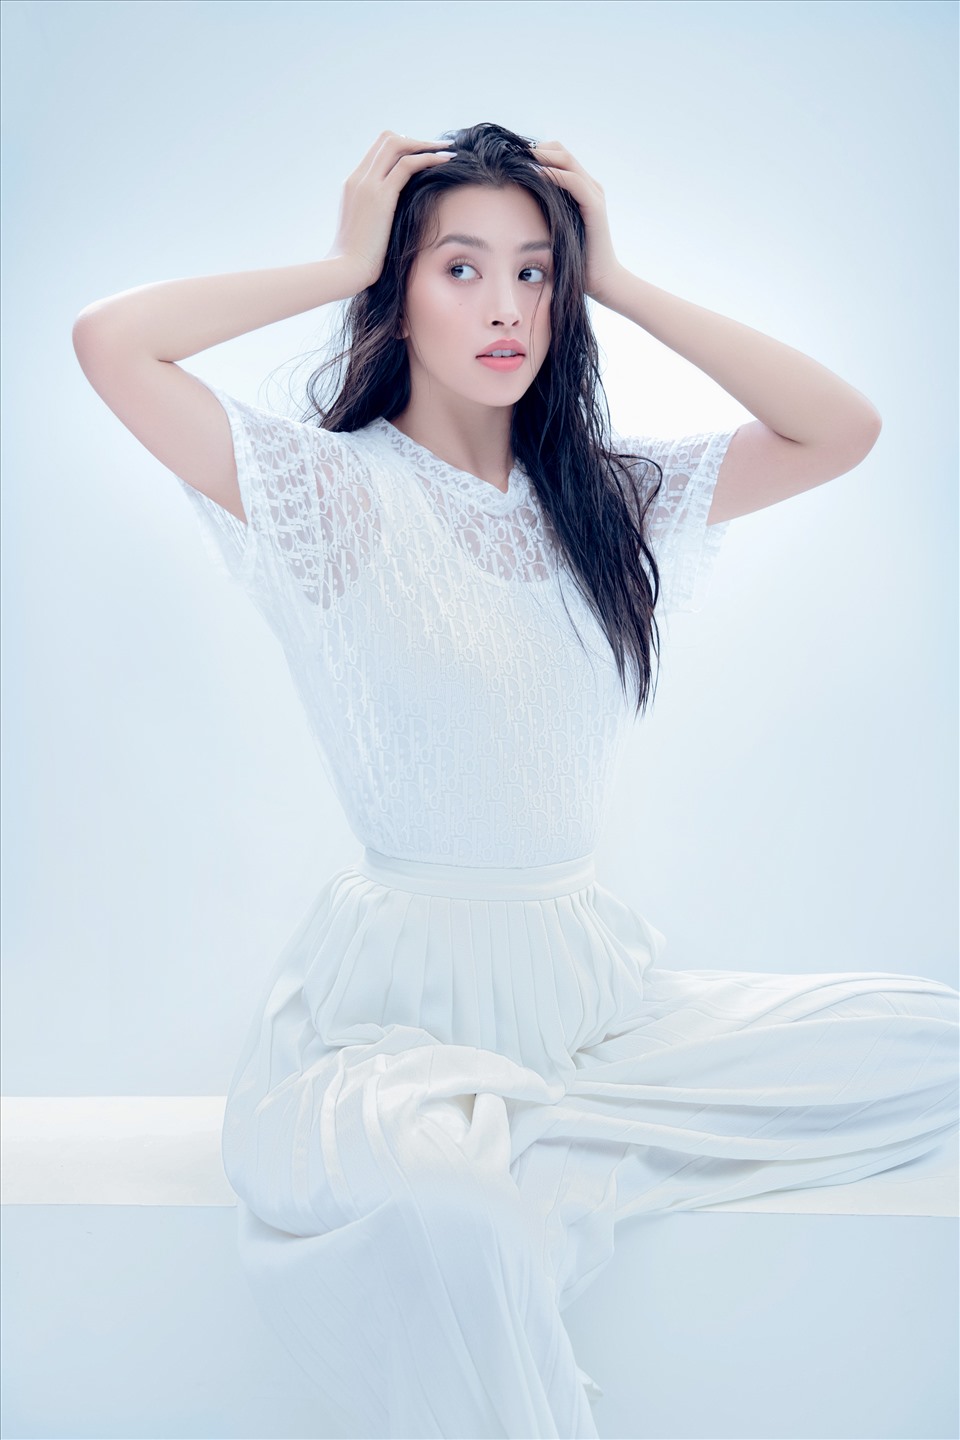 Hoa hậu Tiểu Vy luôn nỗ lực không ngừng nghỉ để khẳng định bản thân mình, thành tích Top 30 kiêm Top 5 Dự án nhân ái tại Miss World 2018 đã chứng minh bản lĩnh trên đấu trường quốc tế. Ảnh: Huỳnh Trí Nghĩa.